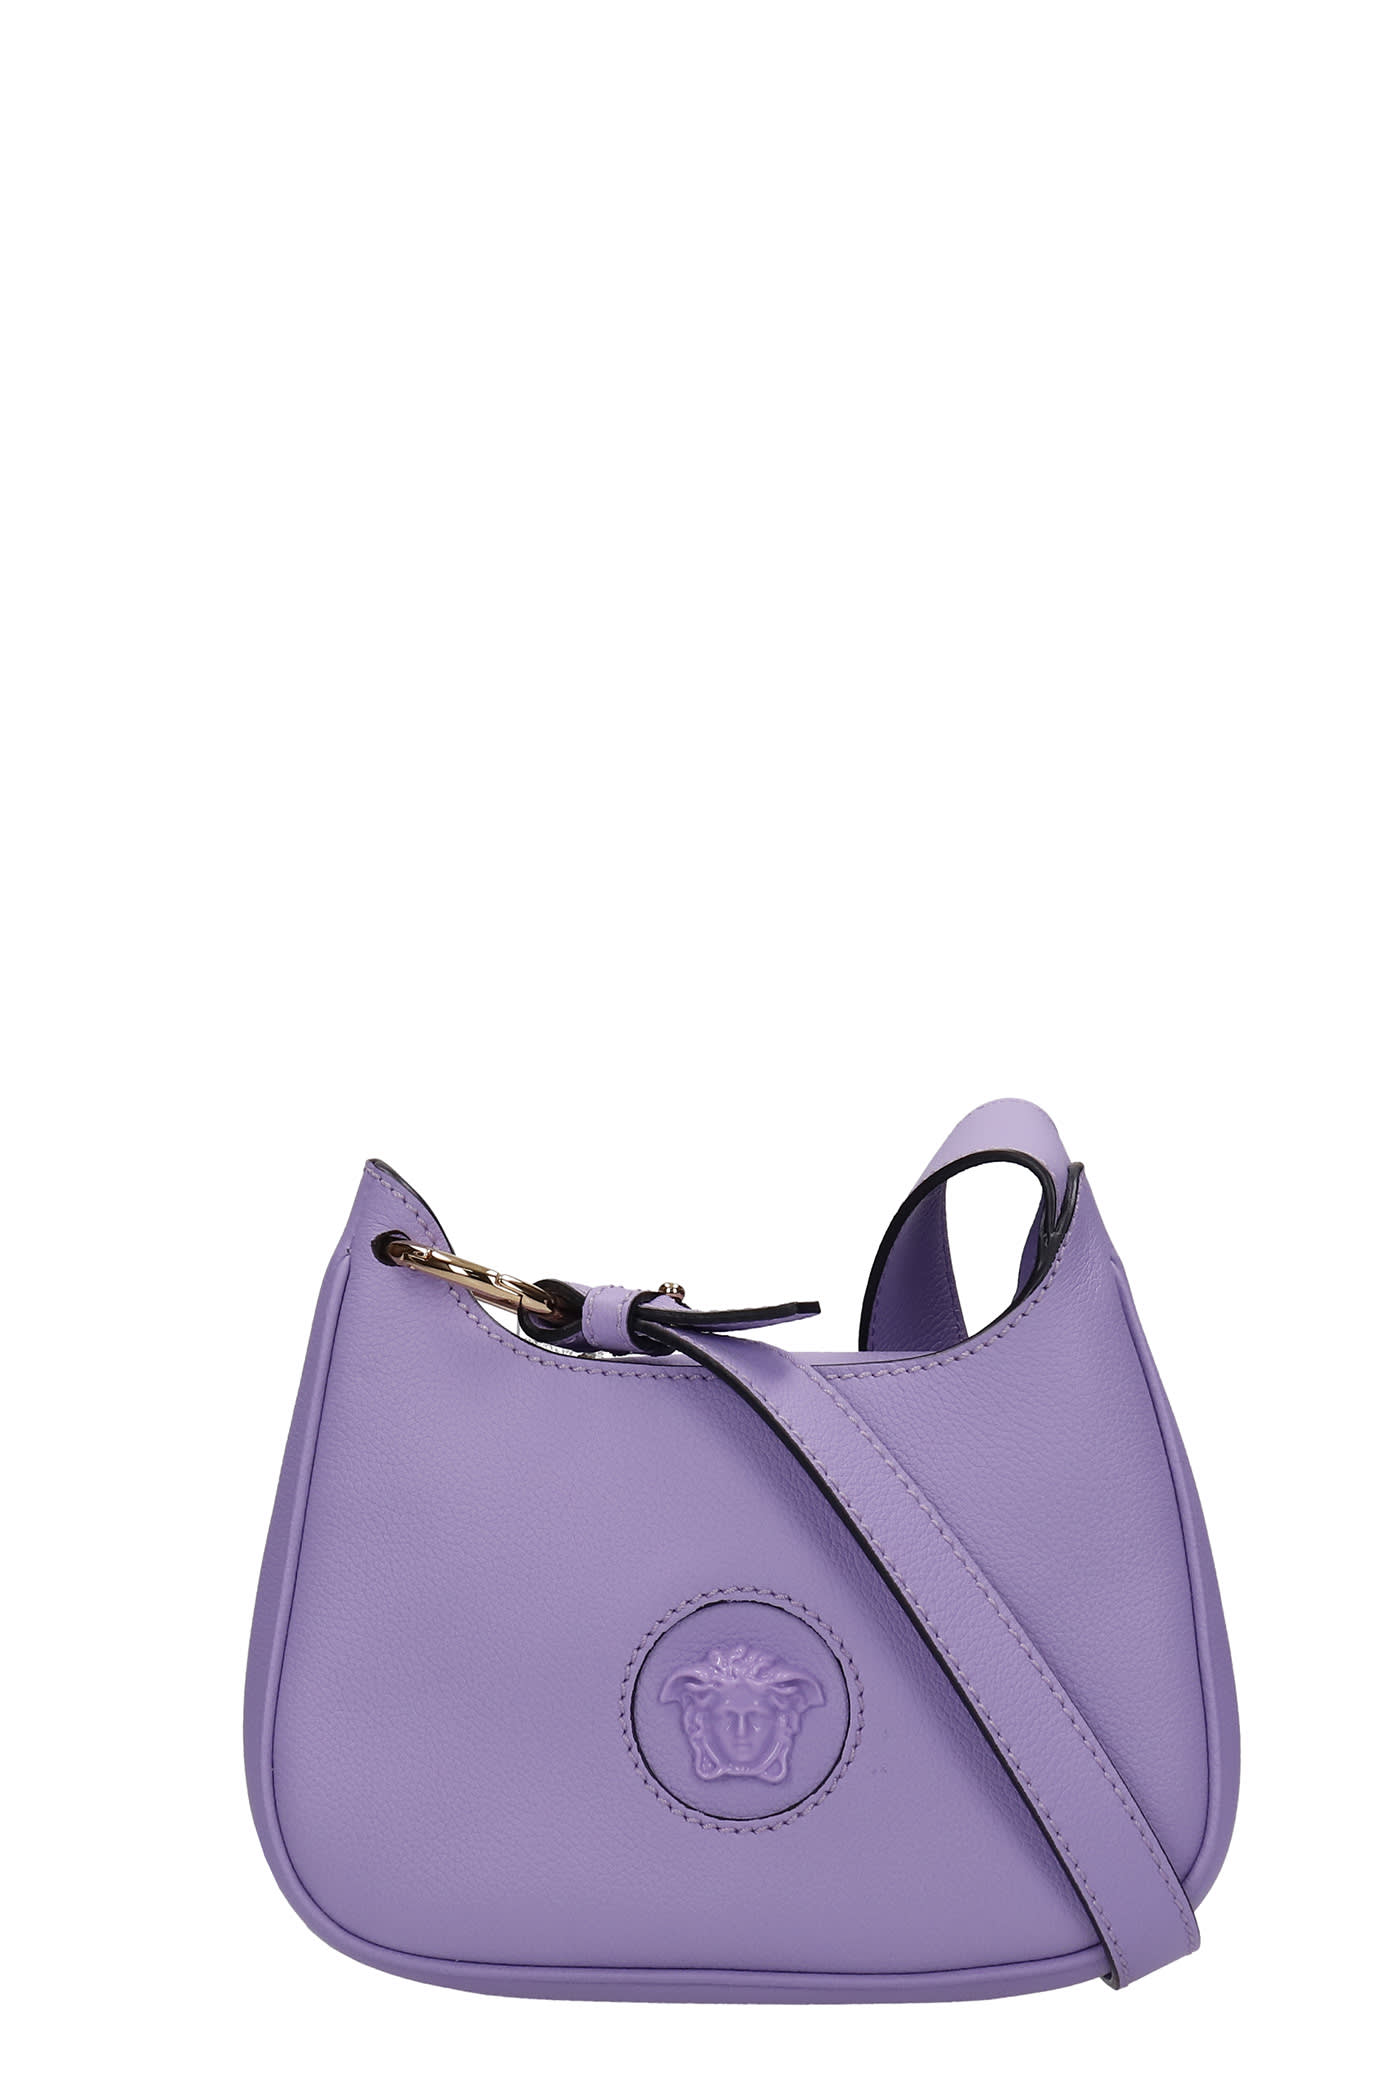 Versace Shoulder Bag In Viola Leather